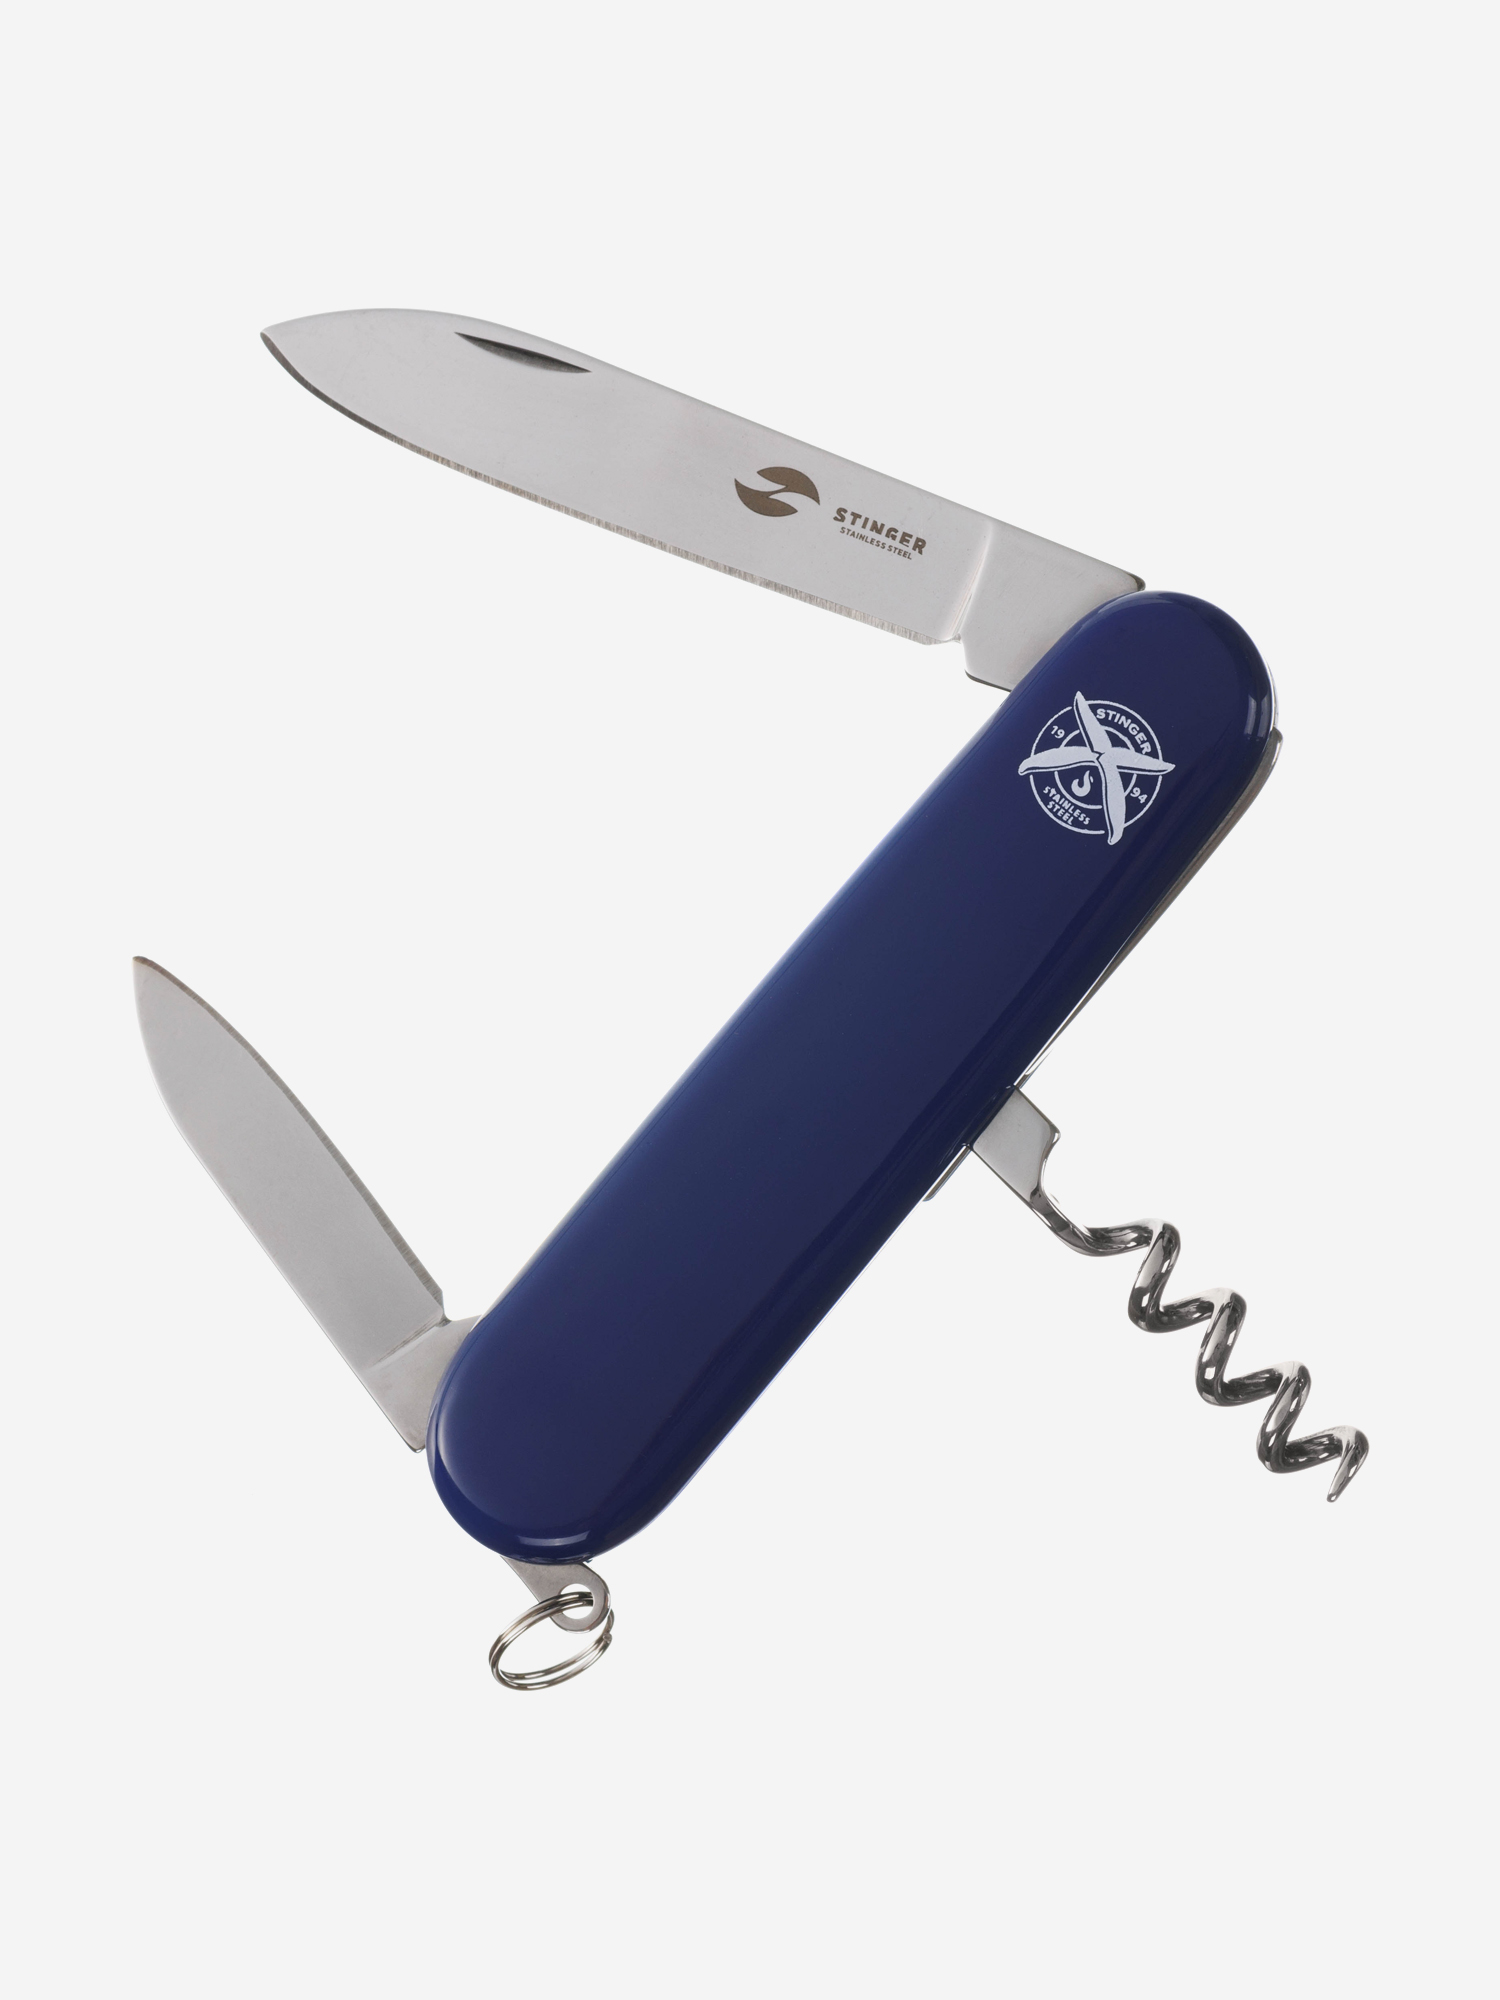 Нож перочинный Stinger, 90 мм, 4 функции, материал рукояти: АБС-пластик (синий), Синий термокружка stinger 0 42 л сталь пластик синий глянцевый 7 5 х 6 9 х 22 2 см синий